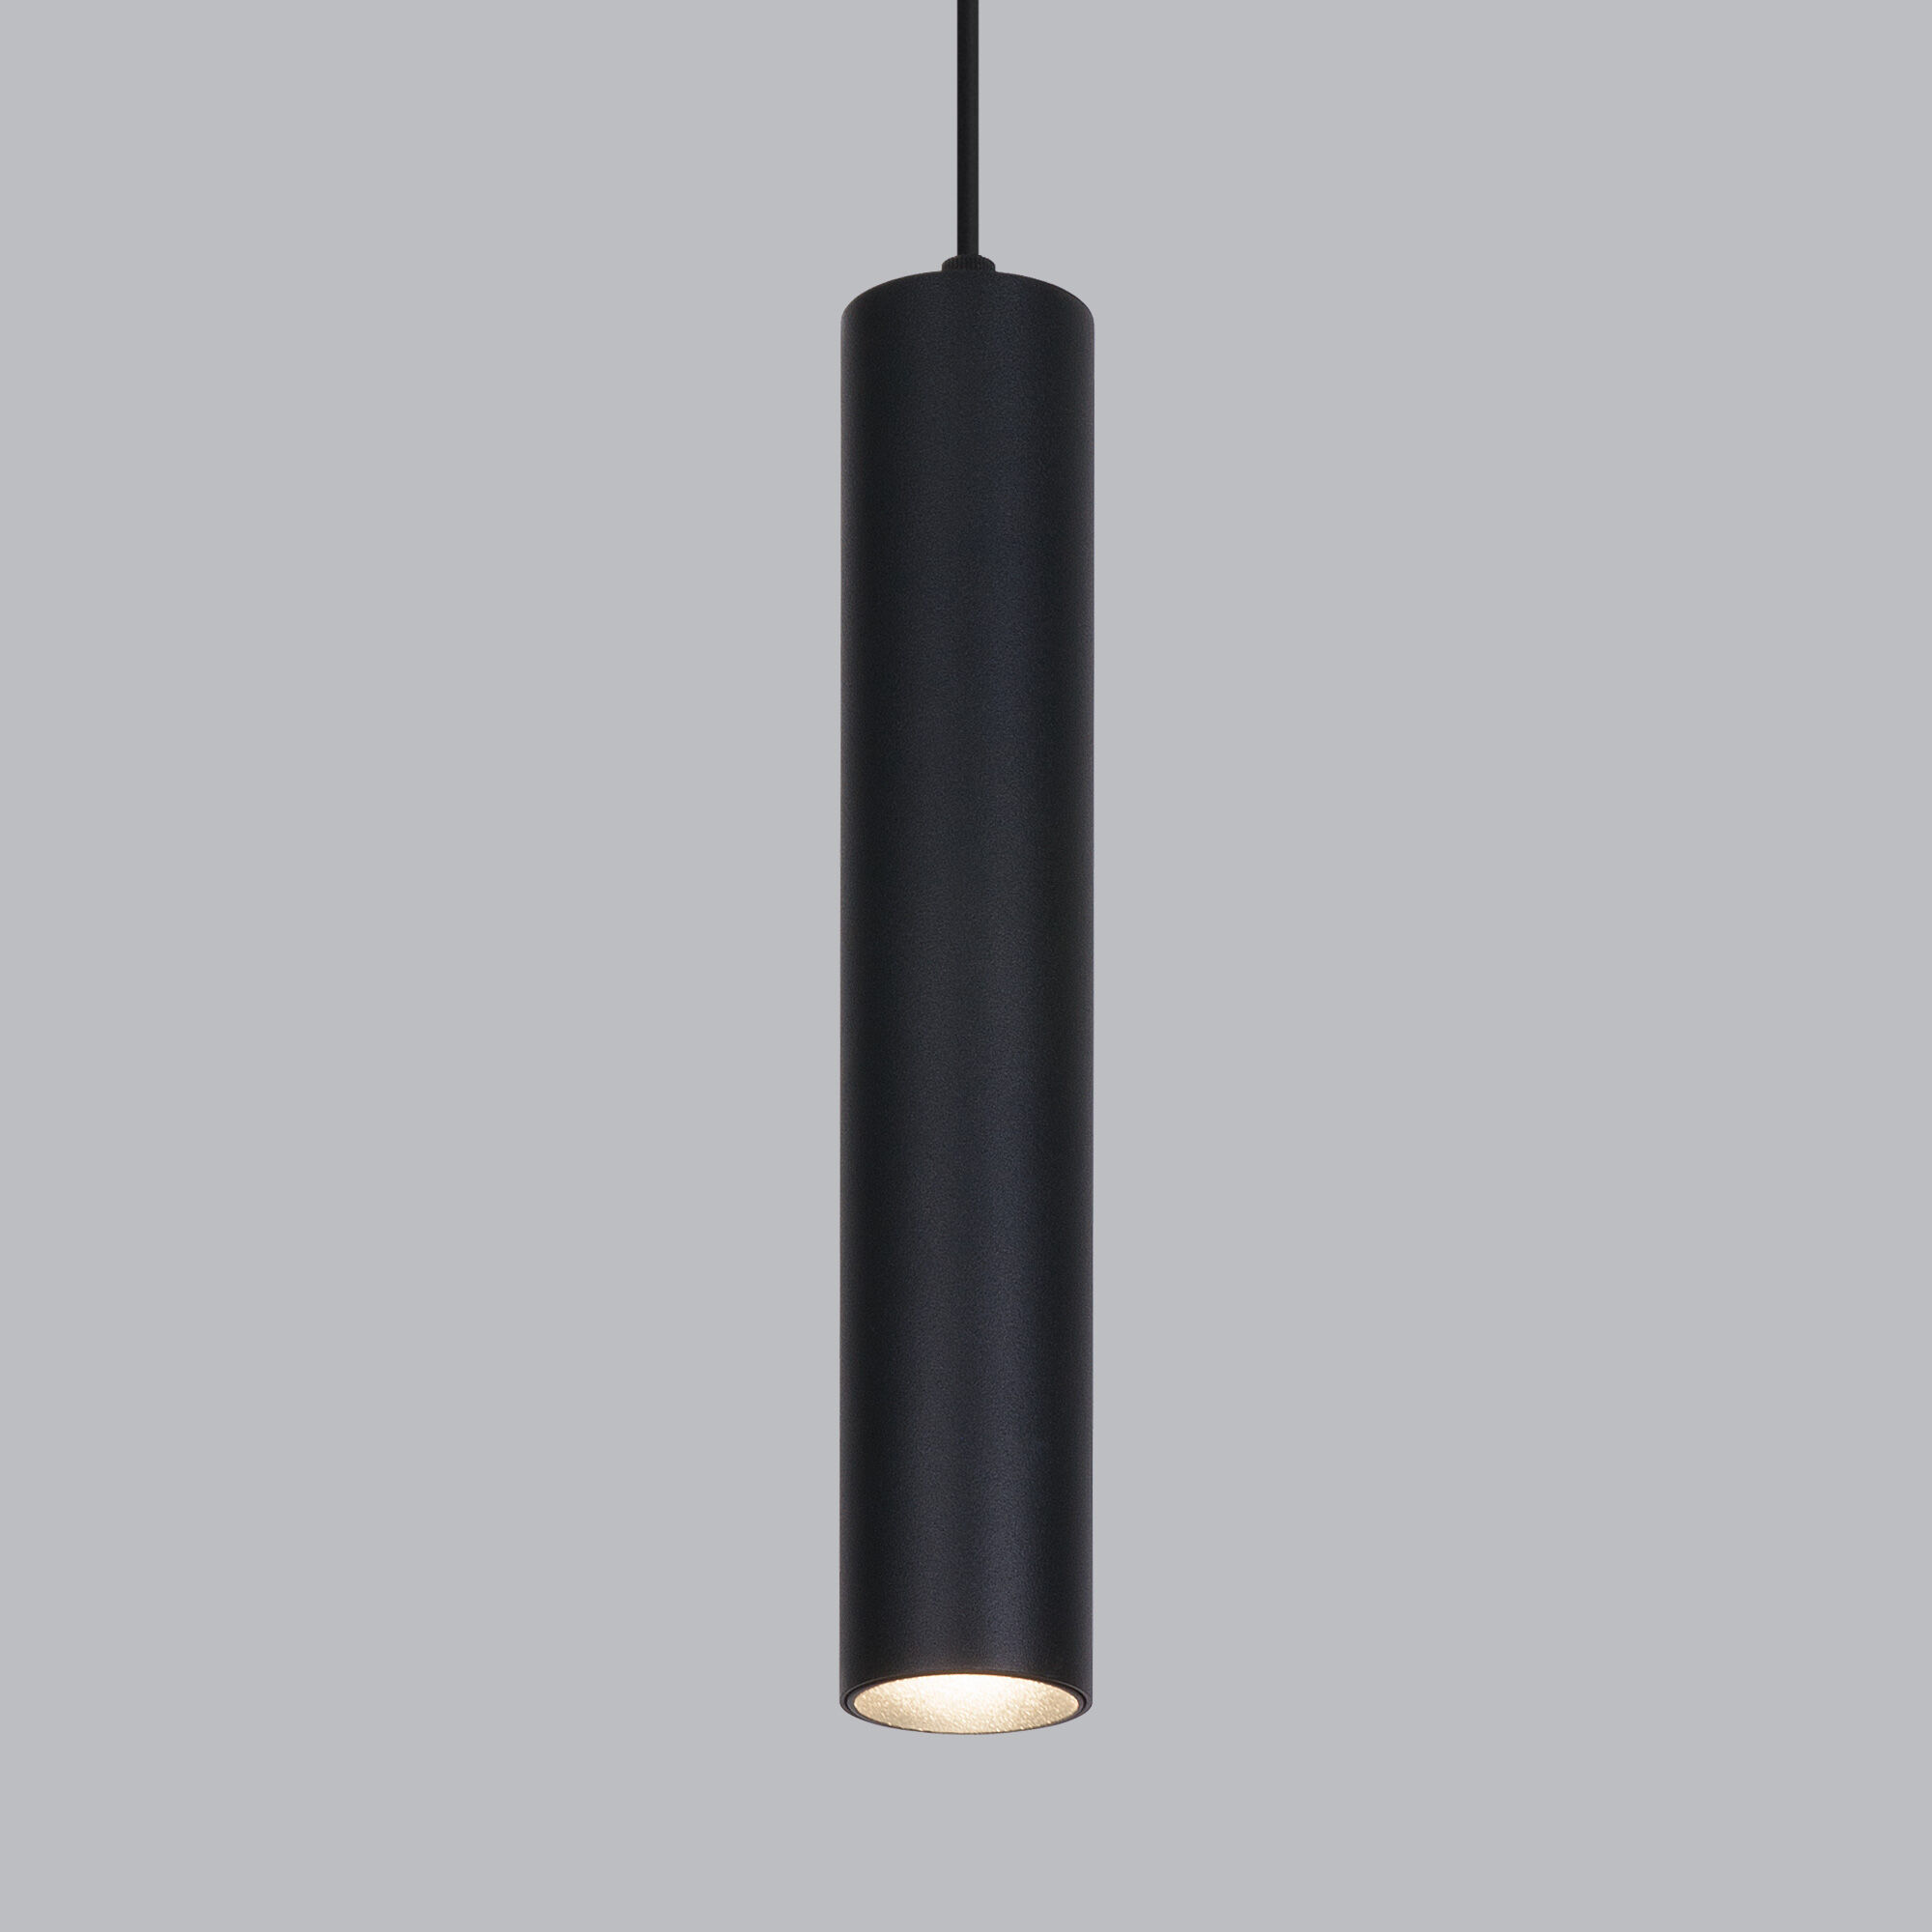 Slim Magnetic Трековый светильник  P01 6W 4200K черный 85014/01